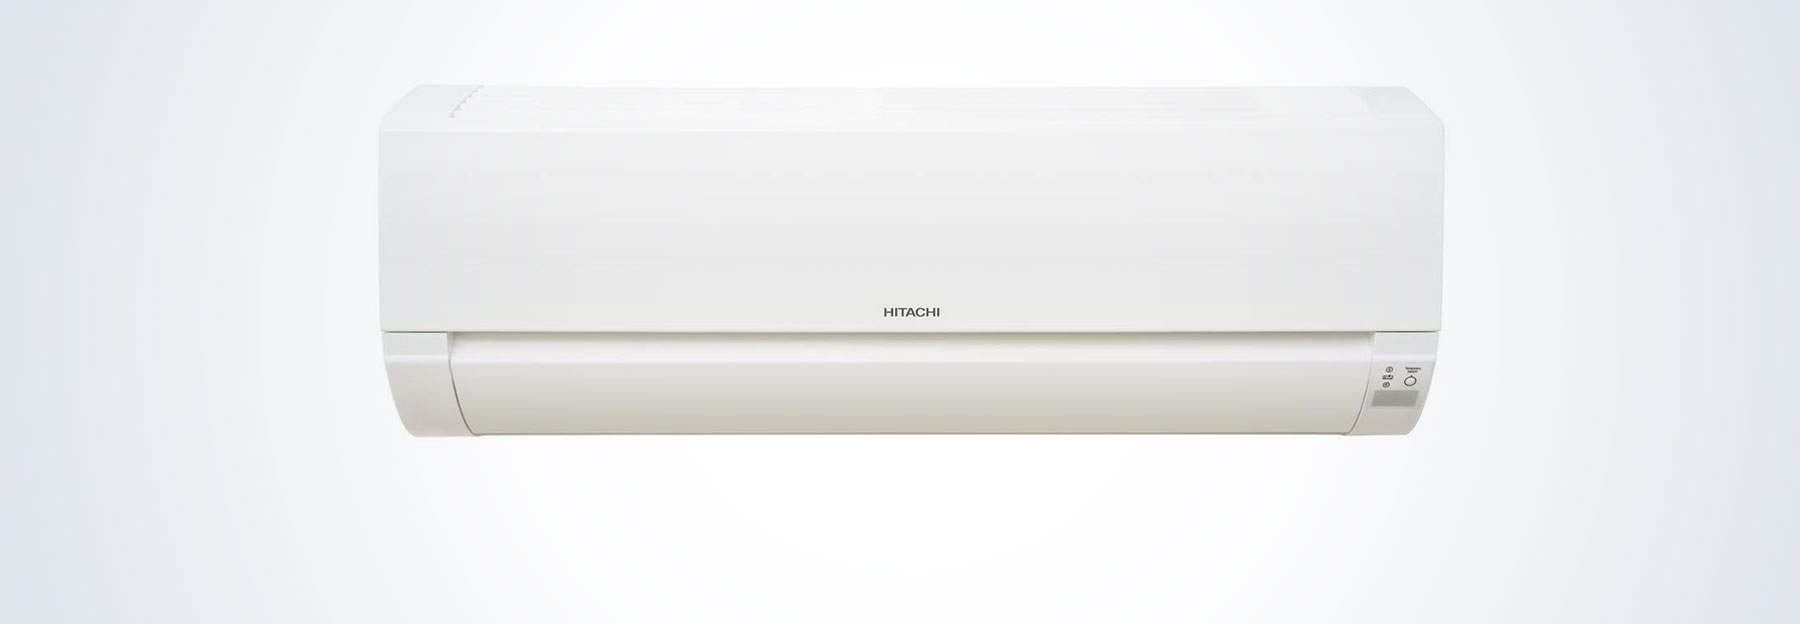 Questions fréquentes Hitachi installateur climatisation réversible, gamme Dodai 2